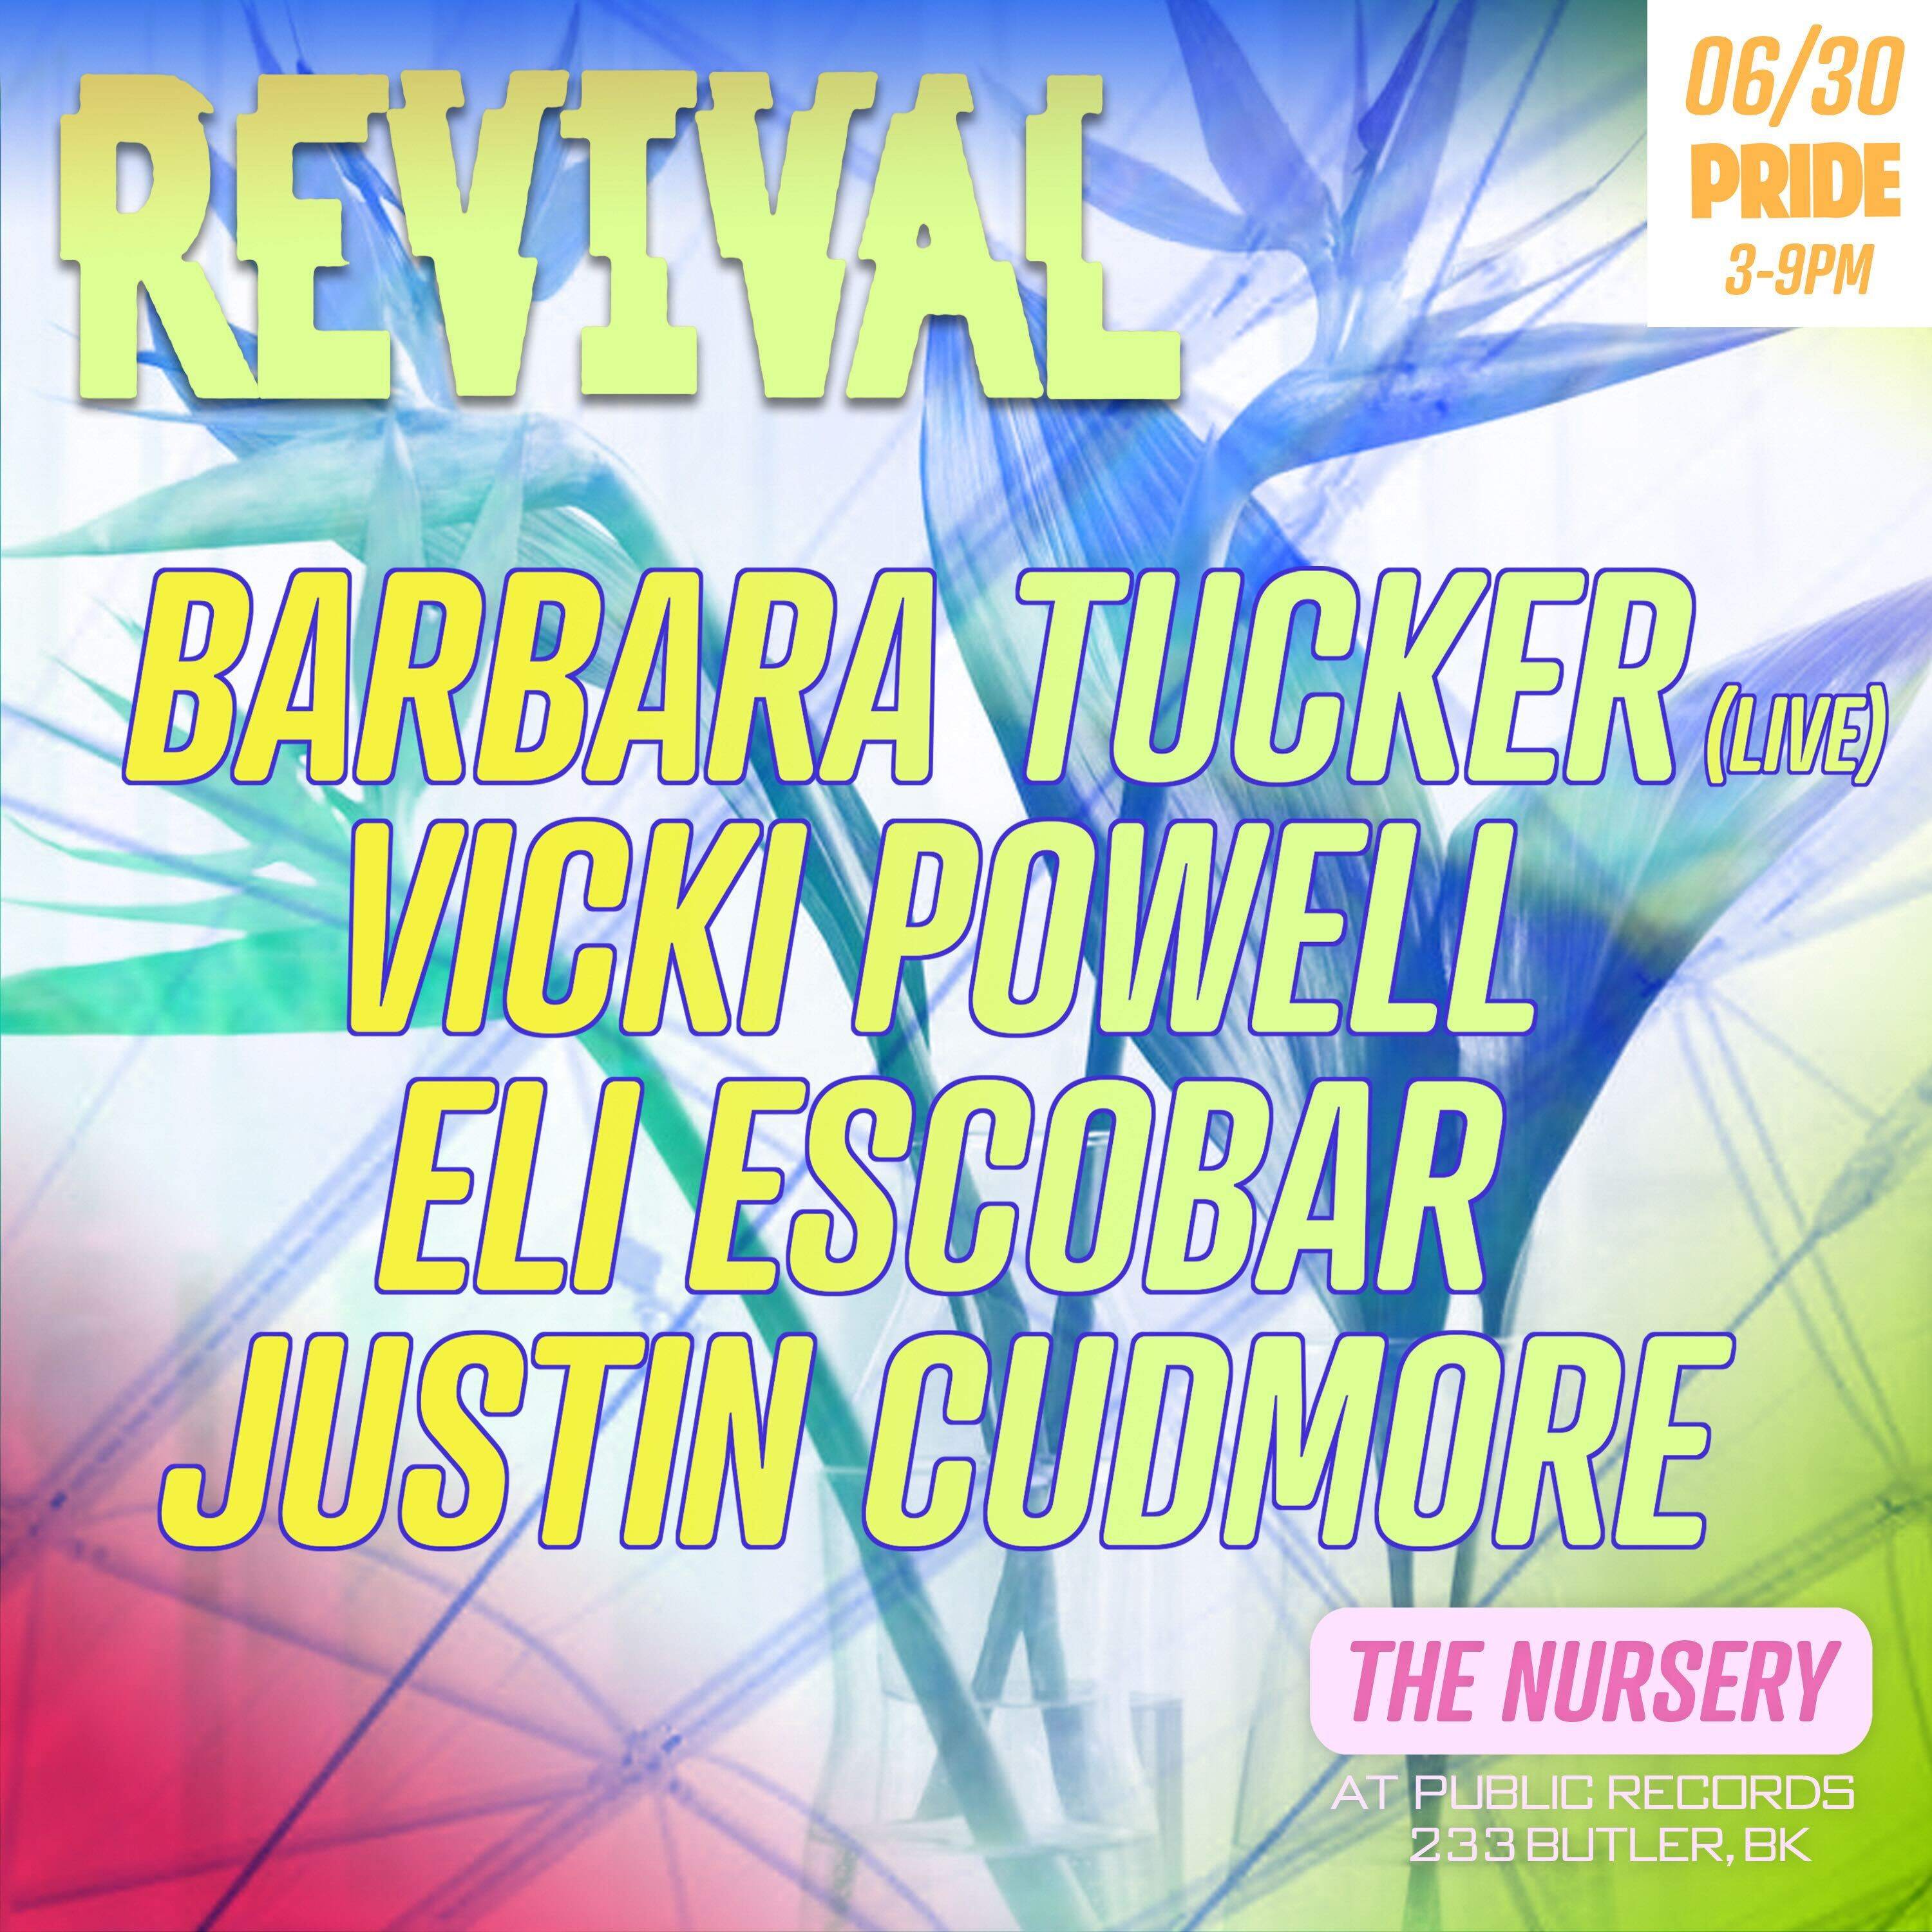 Revival PRIDE: Barbara Tucker (Live) + Vicki Powell + Eli Escobar + Justin Cudmore - フライヤー表